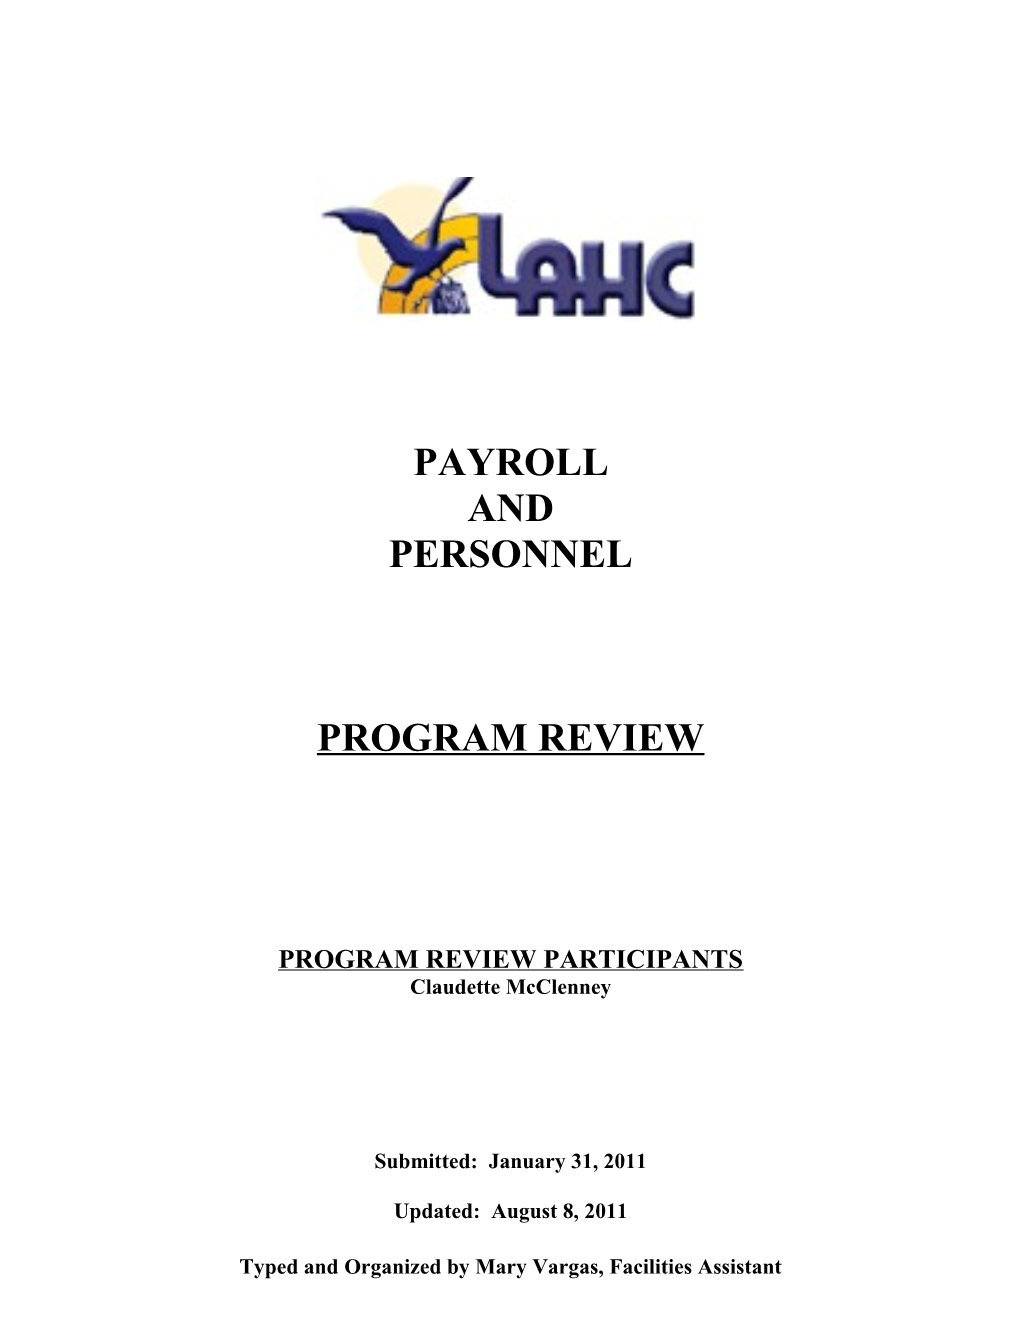 Program Review Participants